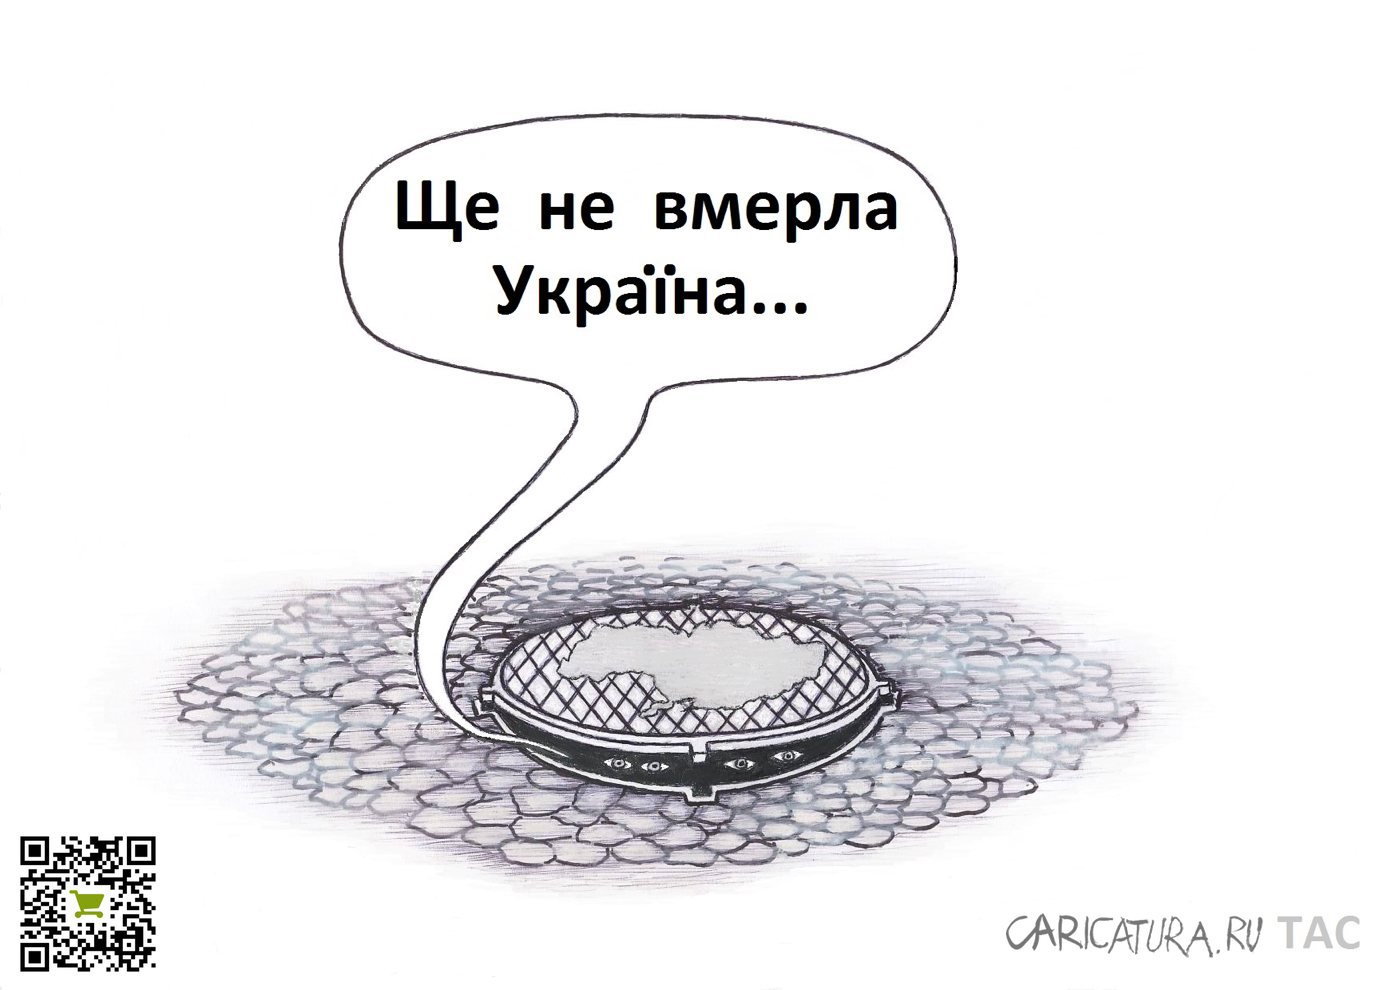 Карикатура "Ждуны", Александр Троицкий